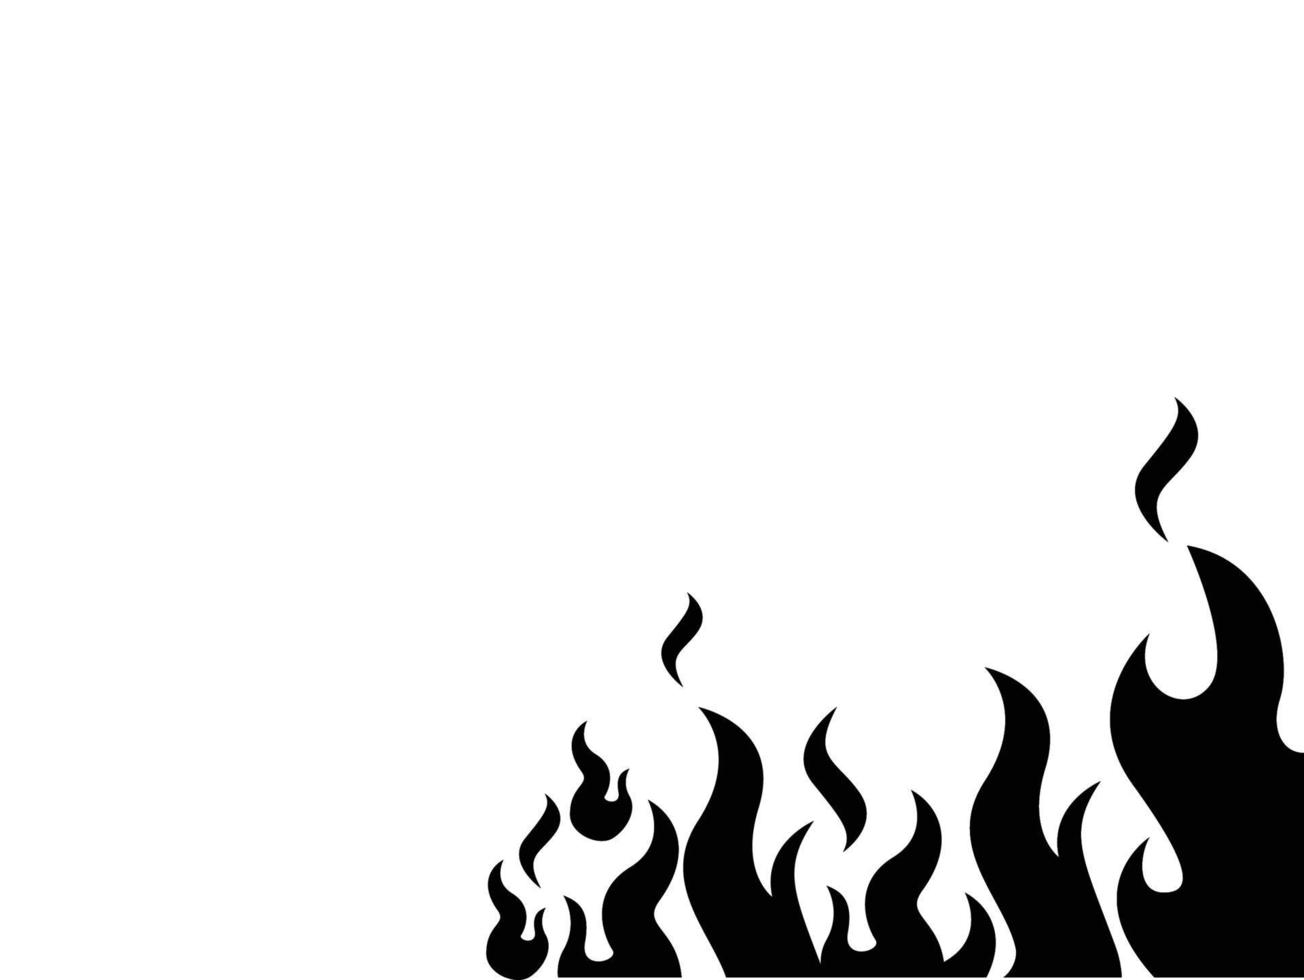 Fondo de fuego negro, ilustración vectorial de un incendio, quema de fuego vector